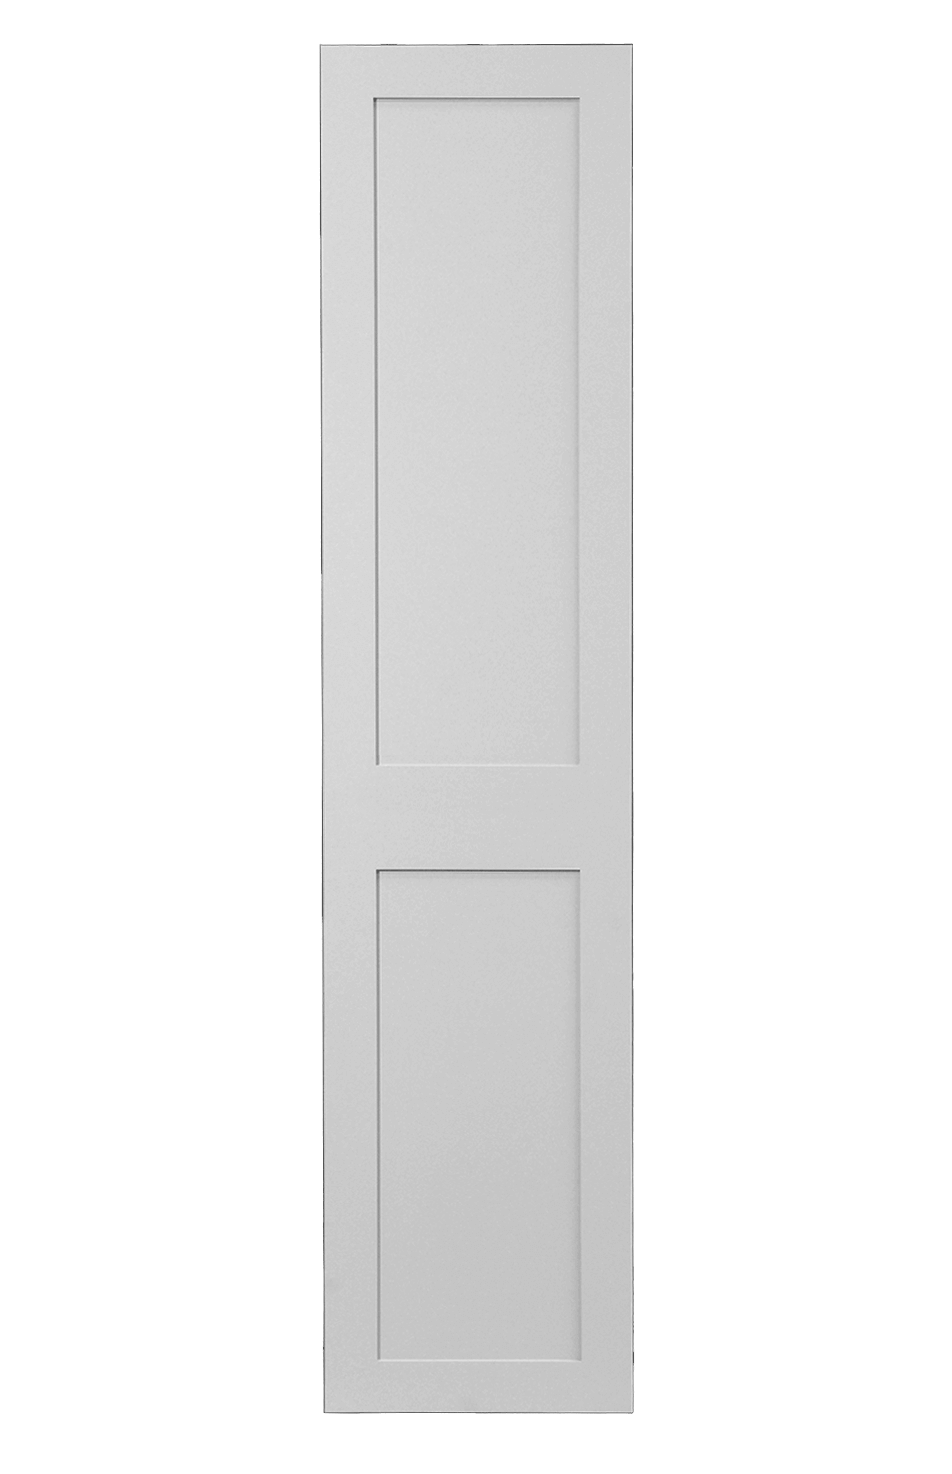 Shaker Doors fitting in 8x4 board